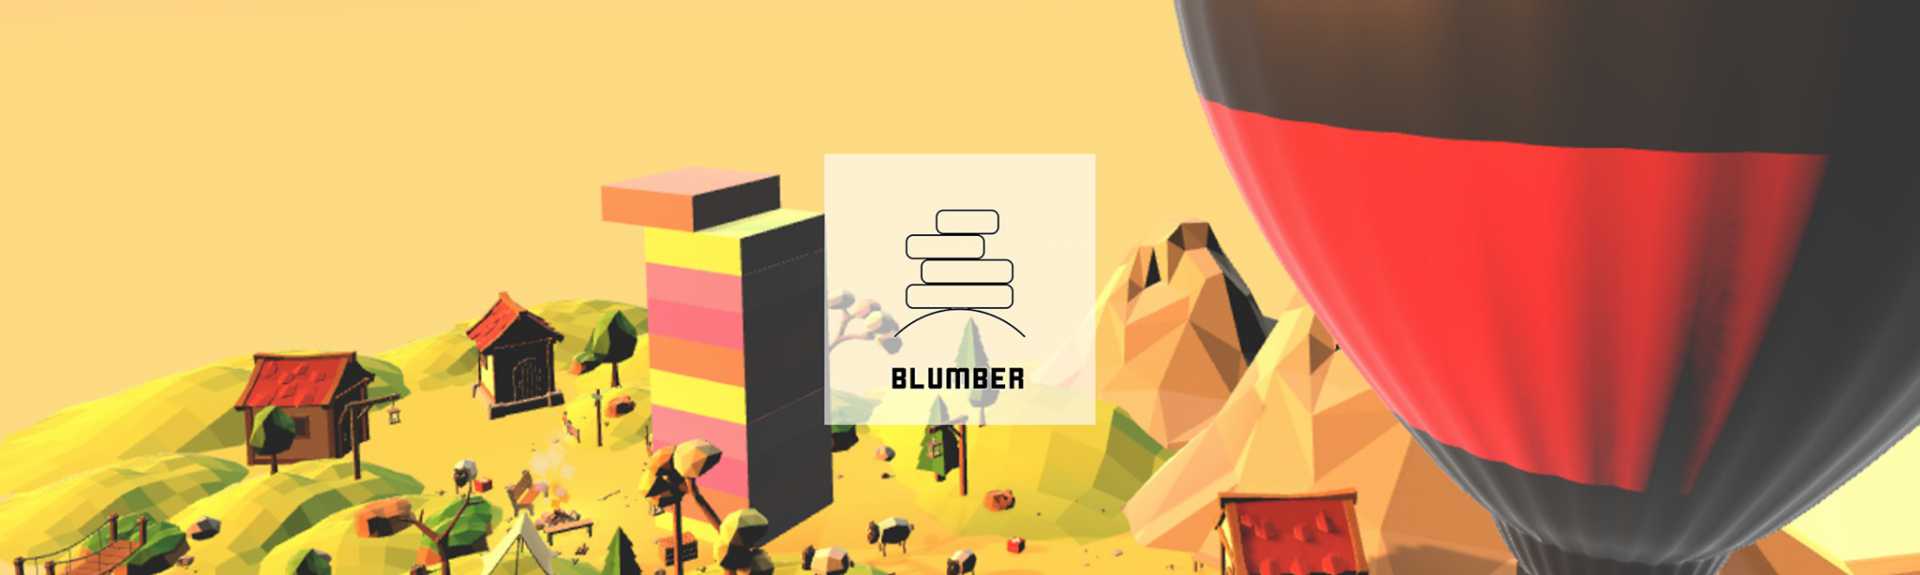 Blumber